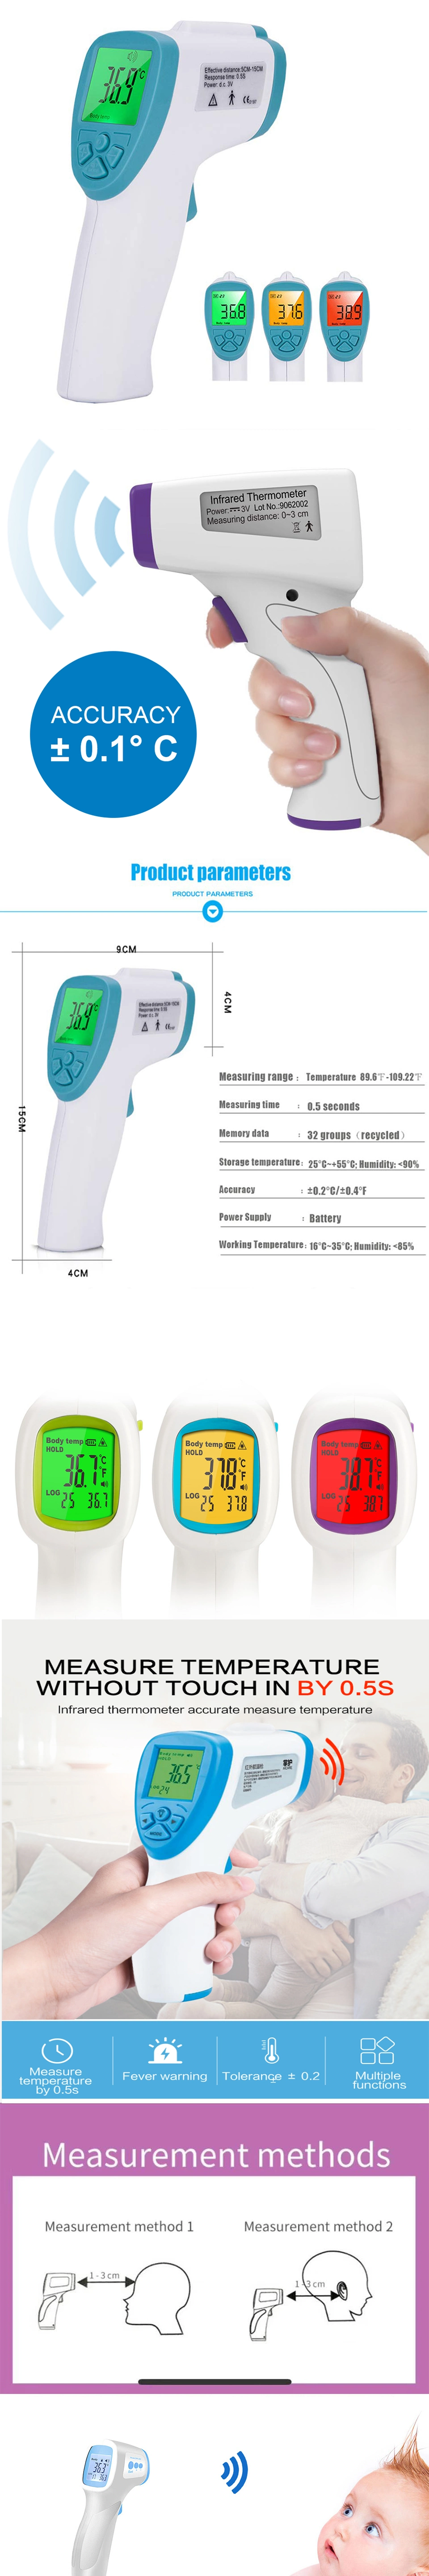 Thermometer Infrared Thermometer Thermometer Infrared